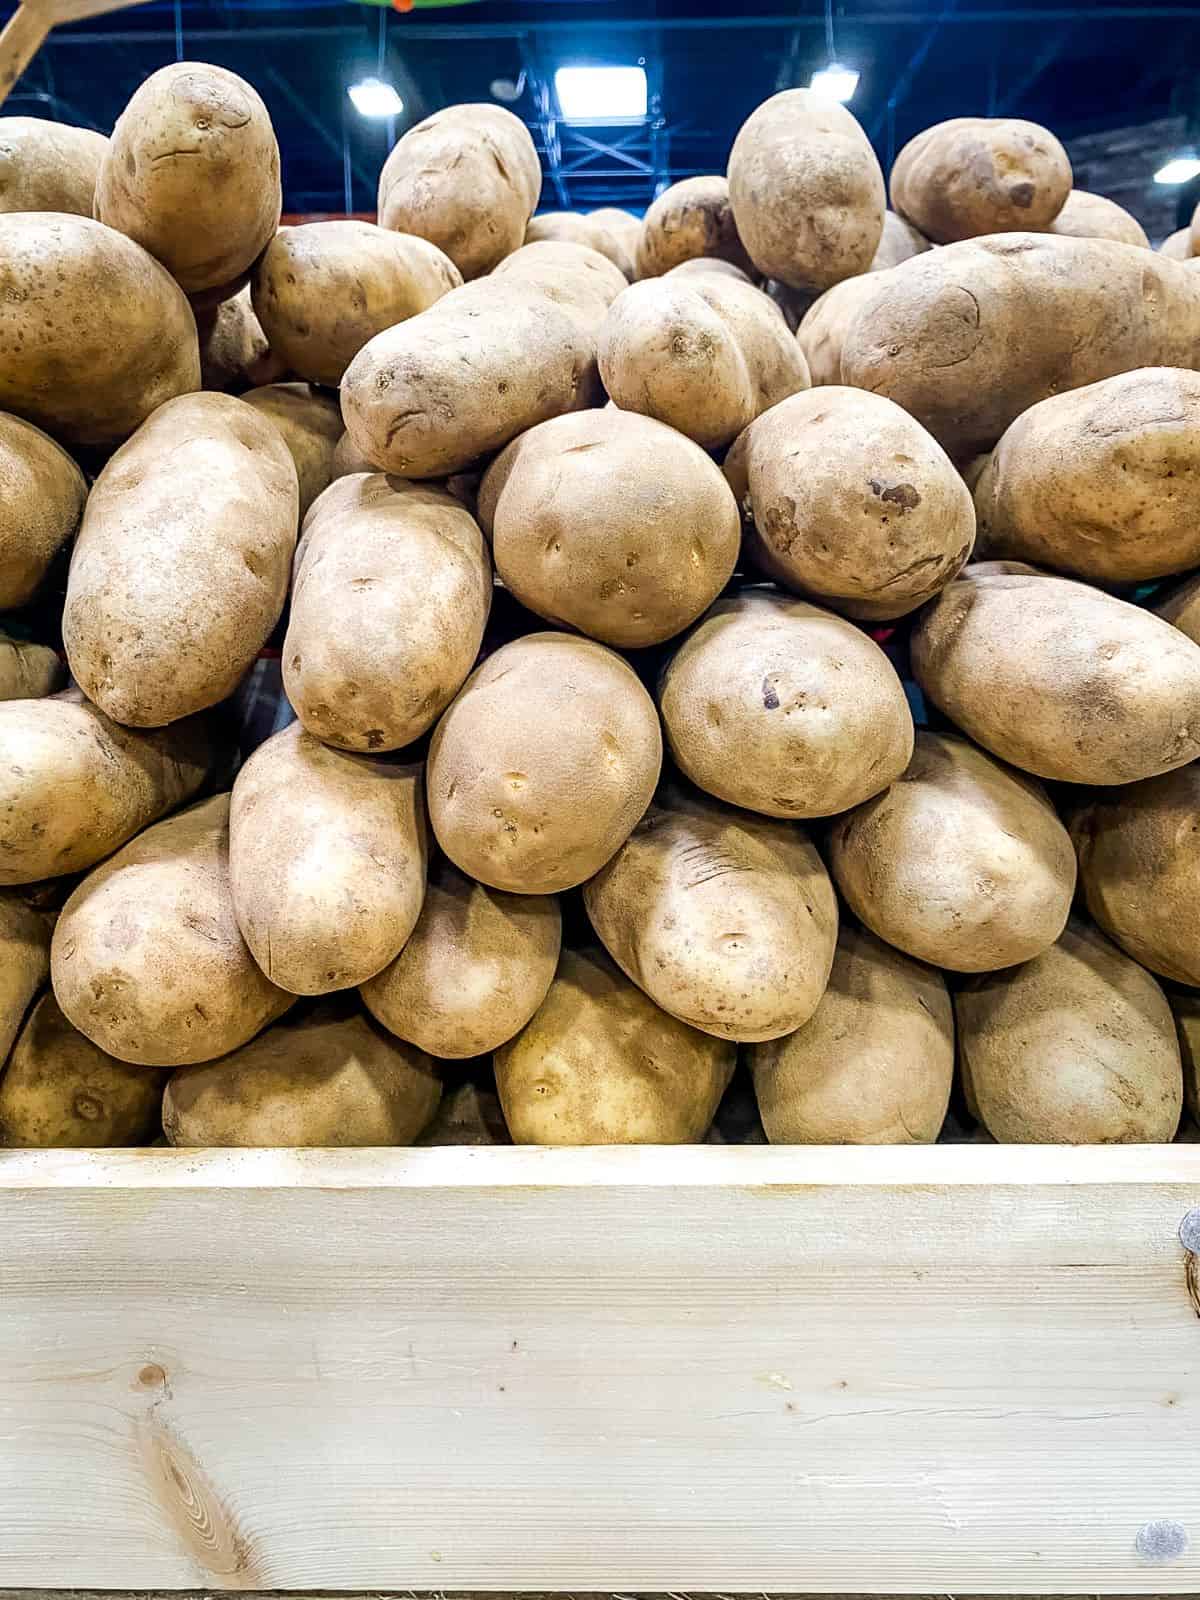 Stacks of potatoes at supermarket.